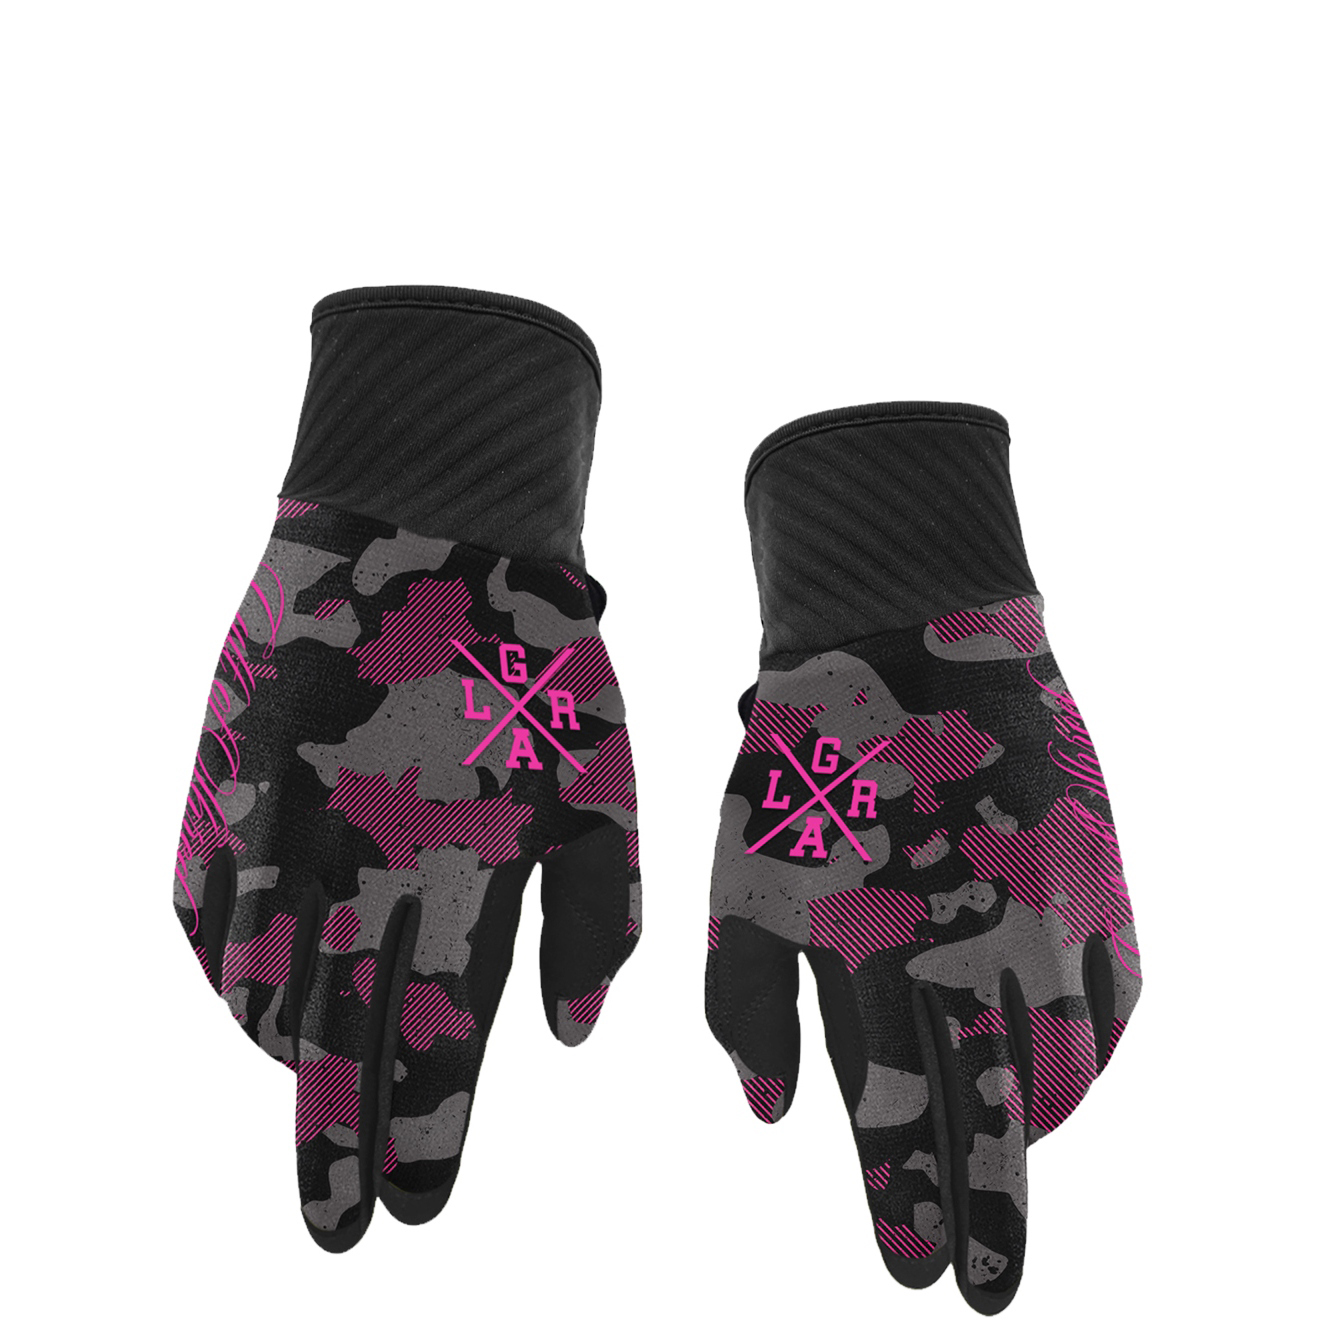 Produktbild von Loose Riders Waterproof Handschuhe - Pink Camo